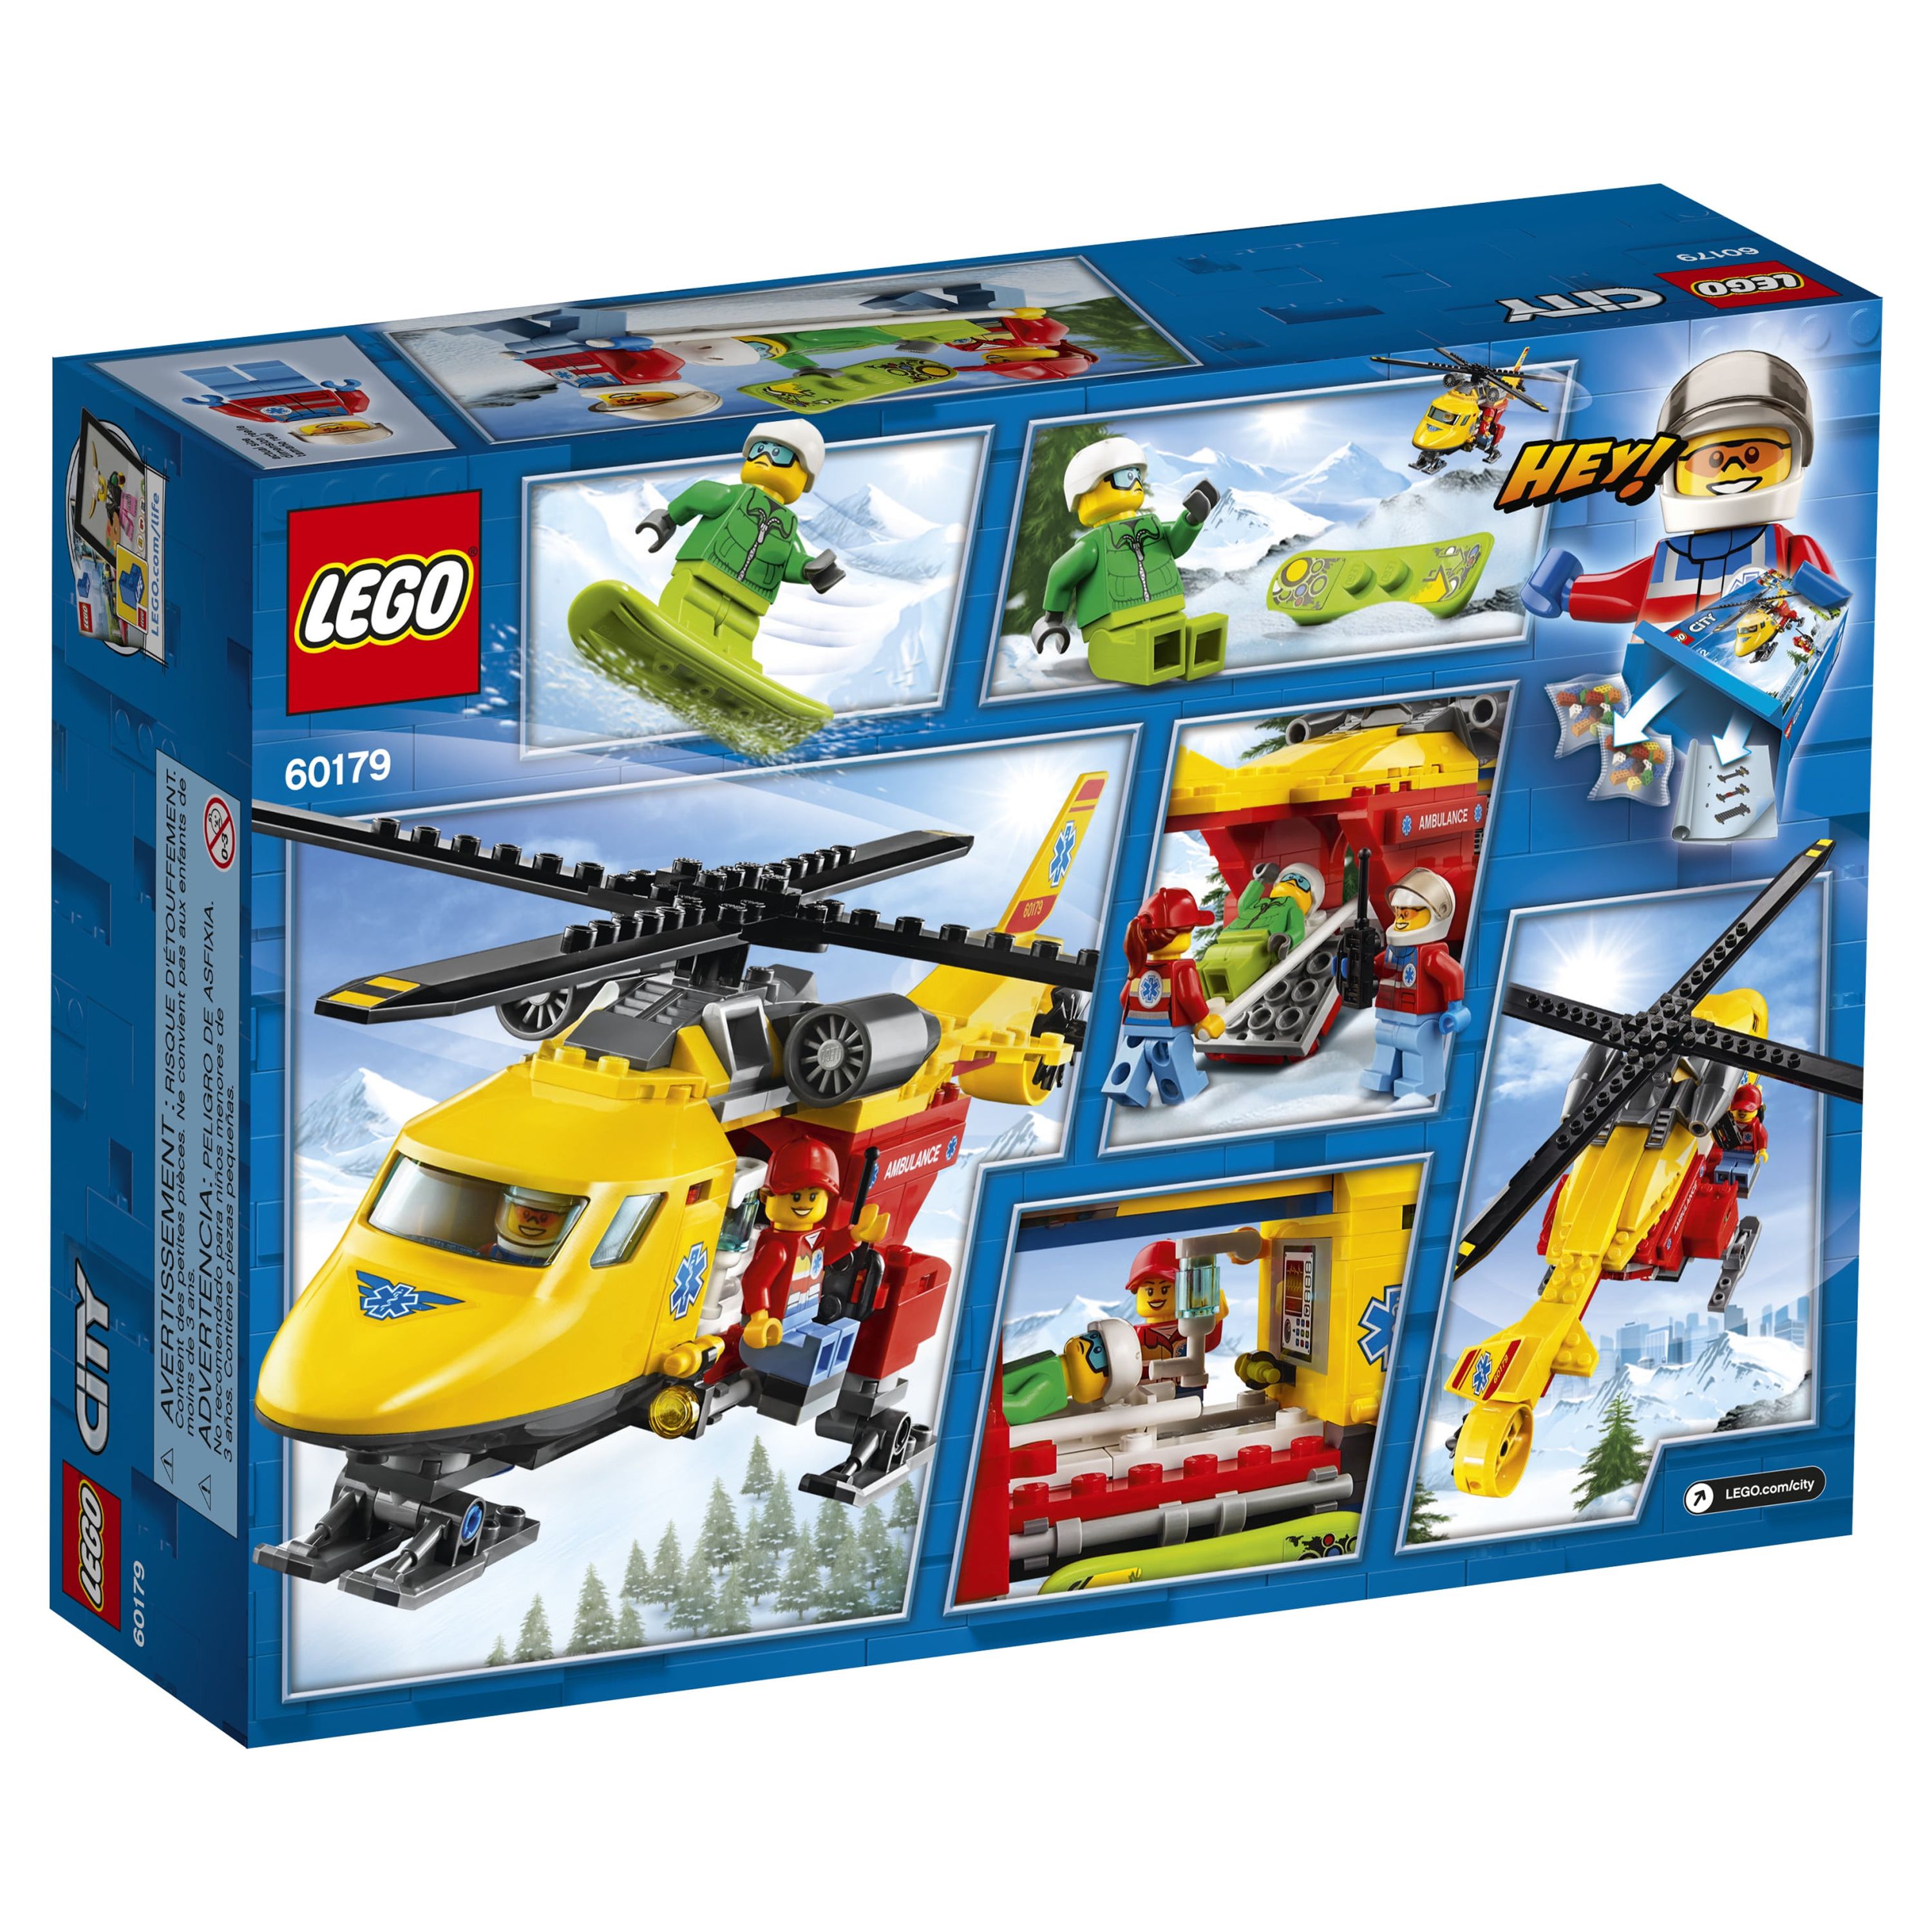 LEGO City Great Vehicles Ambulance Helicopter 60179 - image 5 of 5